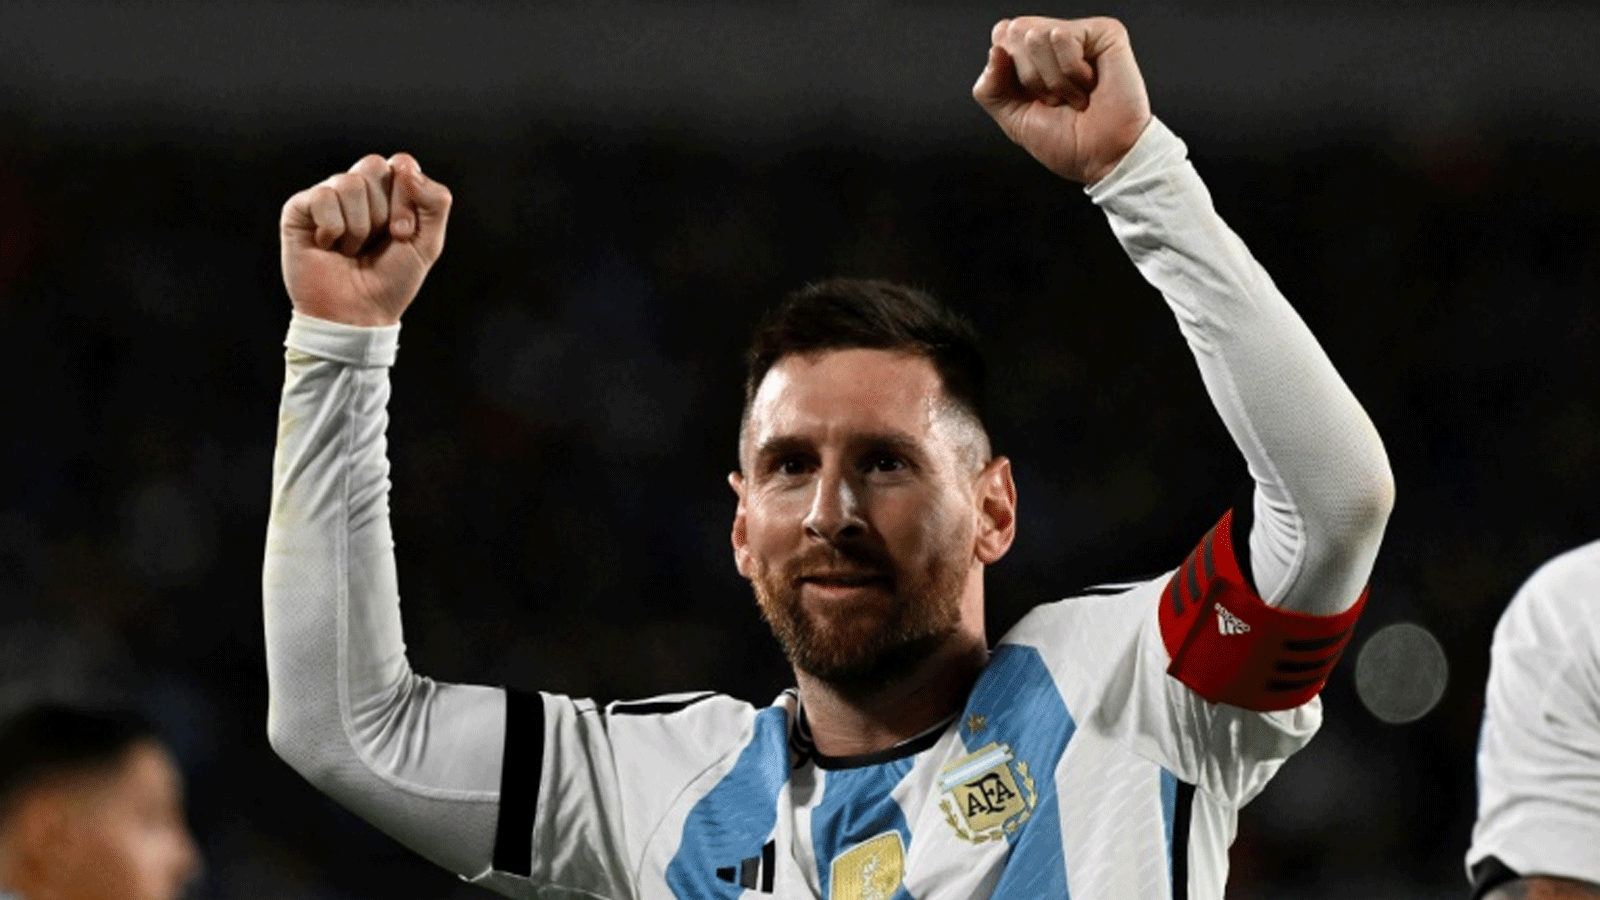 ليونيل ميسي يحتفل بتسجيله هدف الفوز للأرجنتين على الإكوادور 1-0 في المباراة الافتتاحية بتصفيات كأس العالم 2026 في بوينوس أيريس في 8 أيلول/سبتمبر 2023